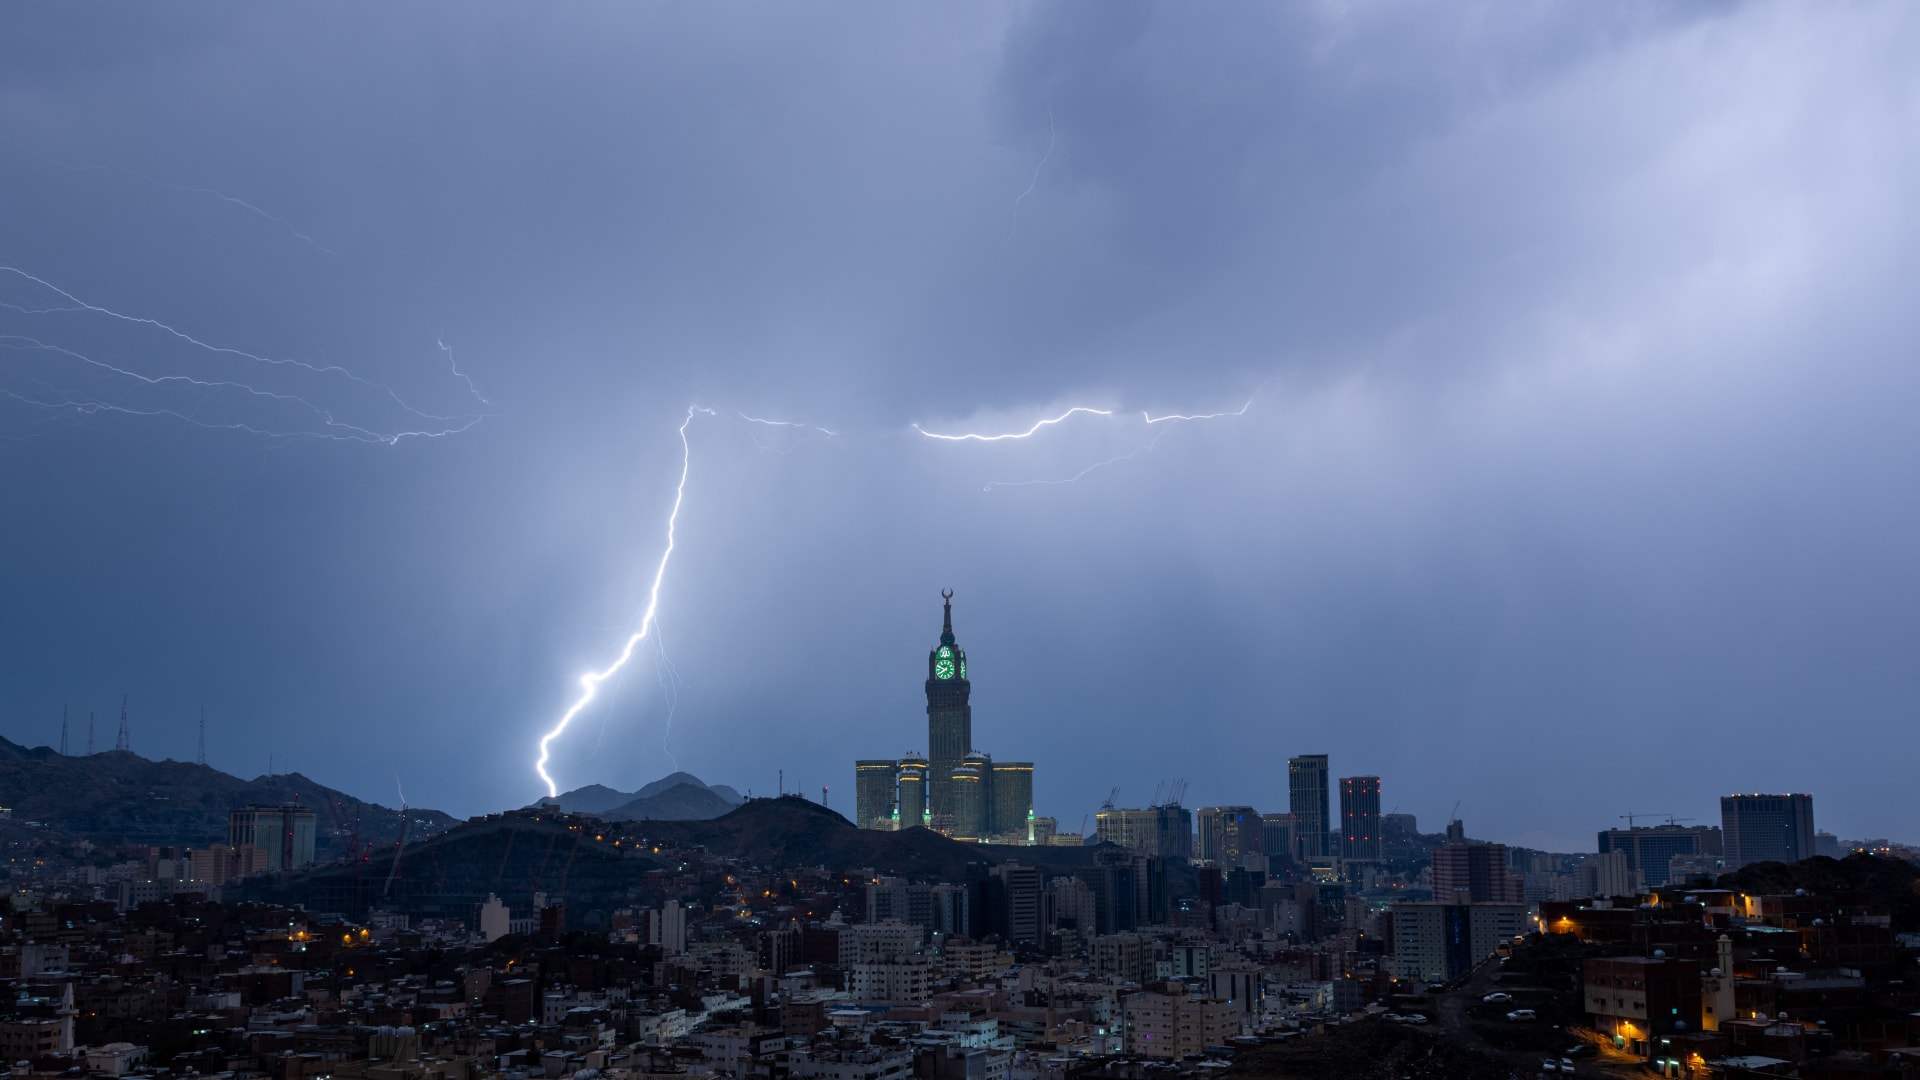 المركز الوطني للأرصاد في السعودية يتوقع أمطار غزيرة